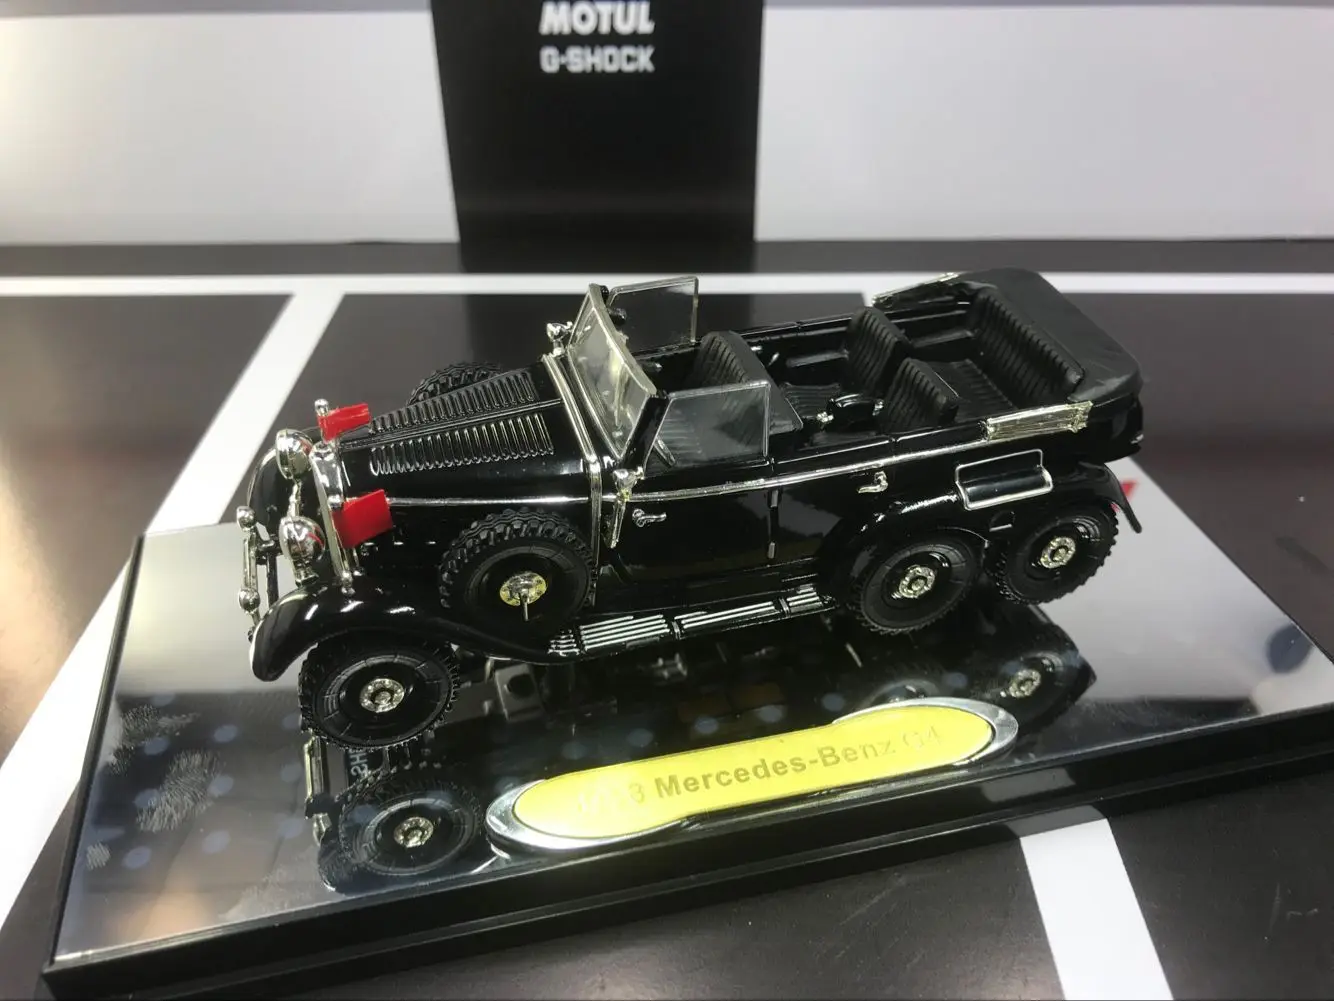 Sig природа 1:43 MB G4 черный сплав модель автомобиля литья под давлением металлические игрушки подарок на день рождения для детей мальчик